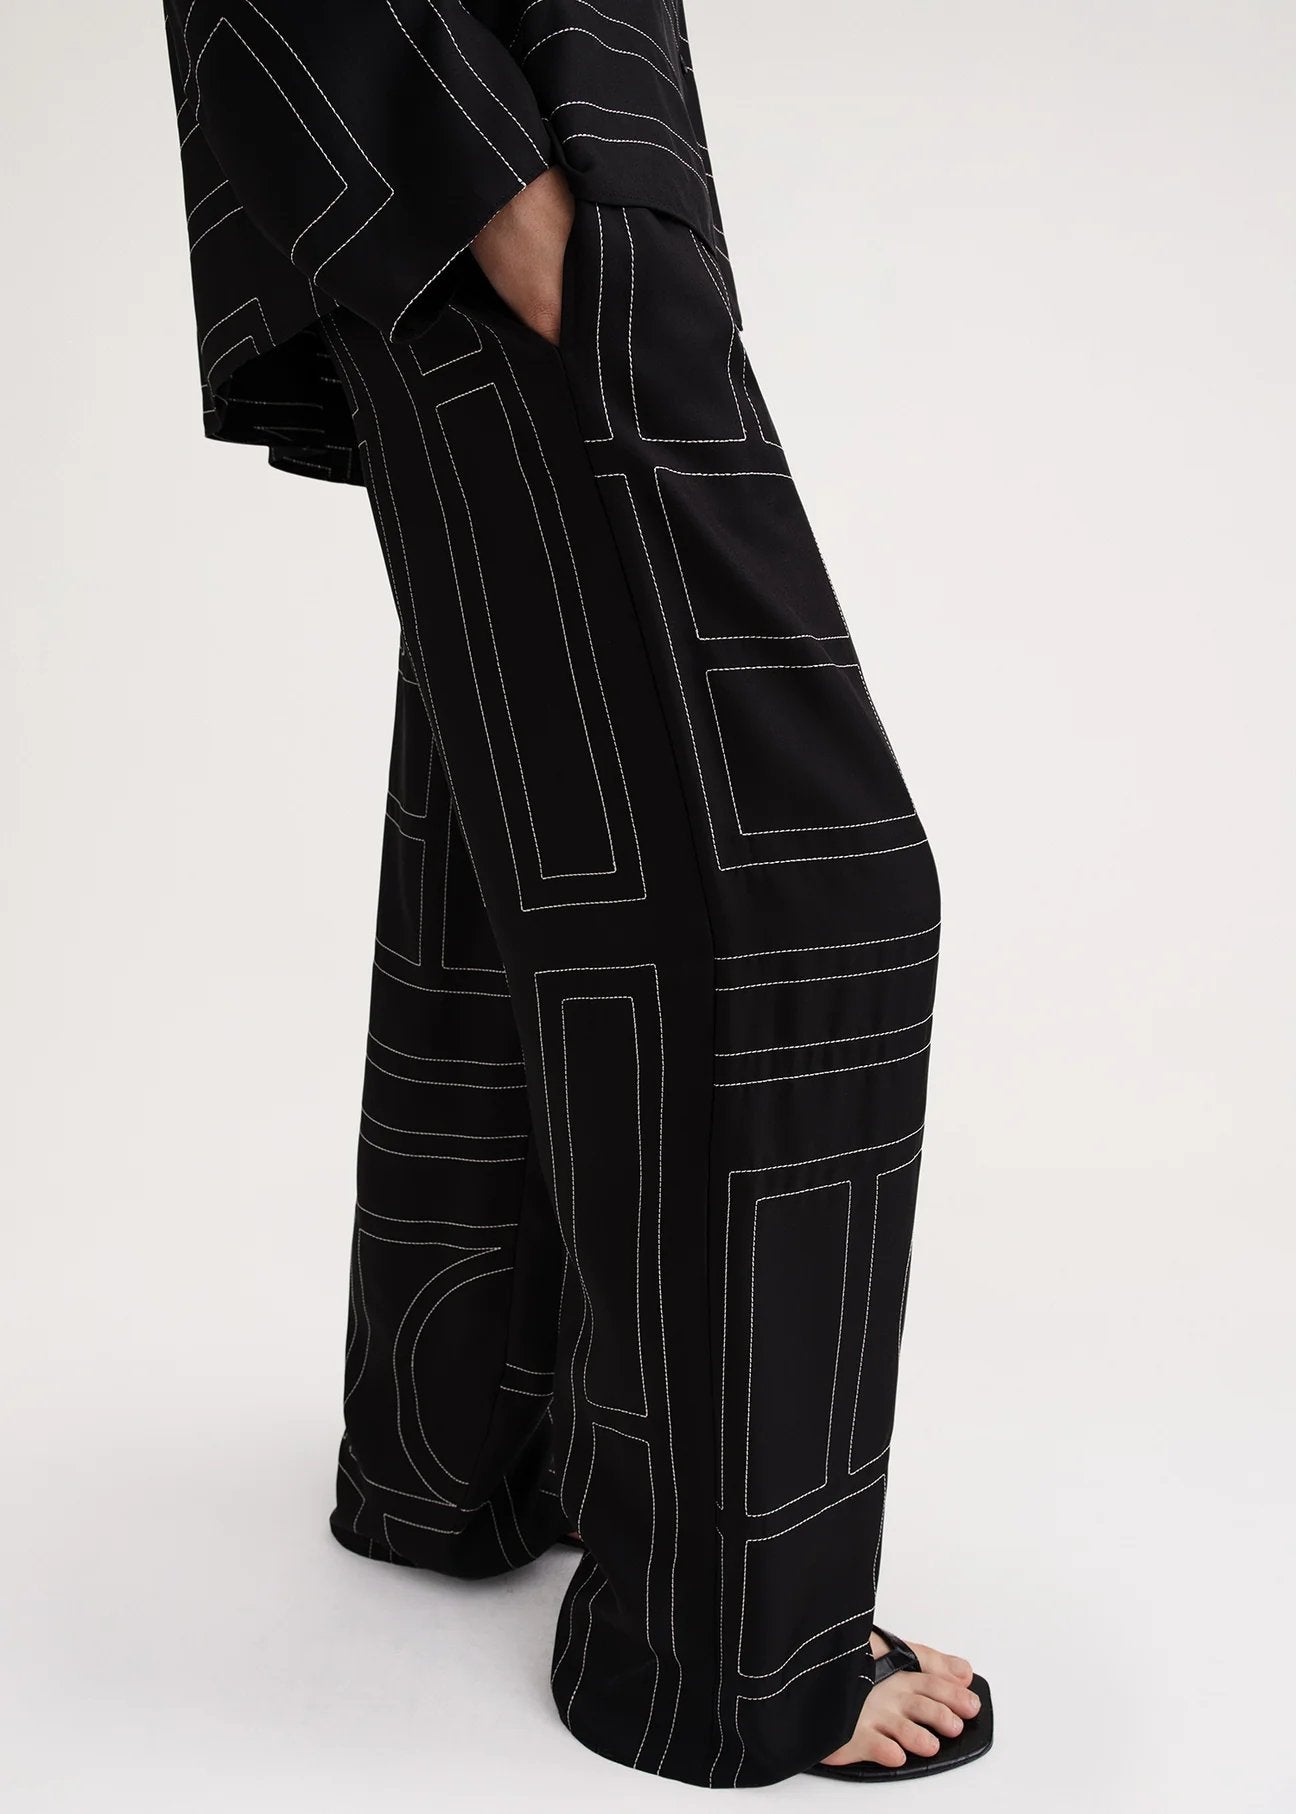 Monogram Silk Pajama Bottoms Black by Toteme – The Line